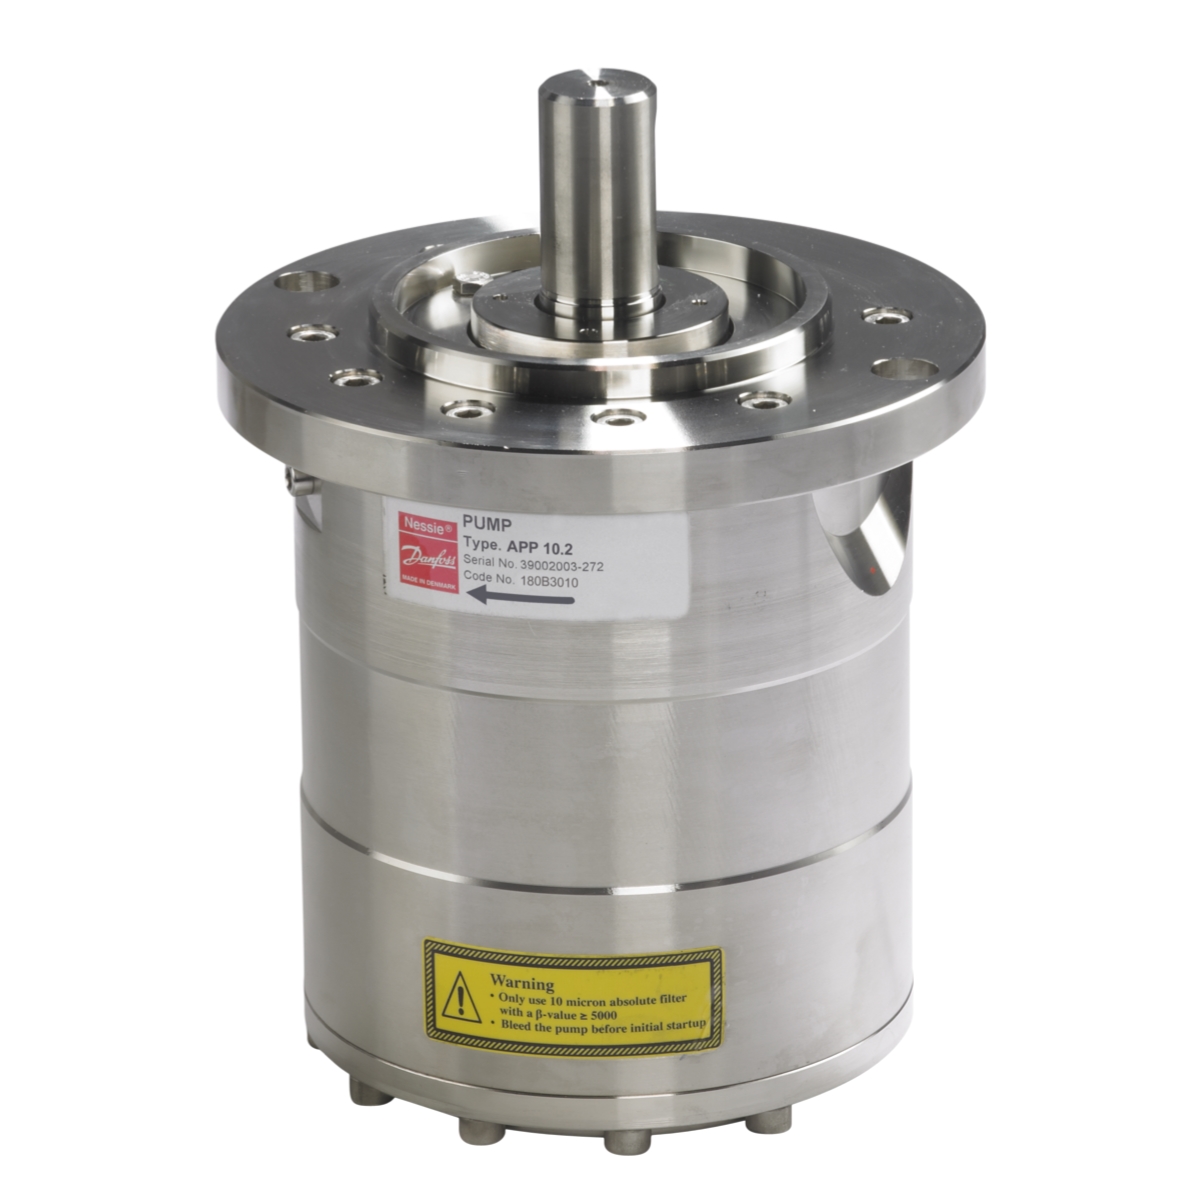 Danfoss APP 10.2 180B3010 Axial Piston High Pressure Pump water application, such as, seawater desalination.